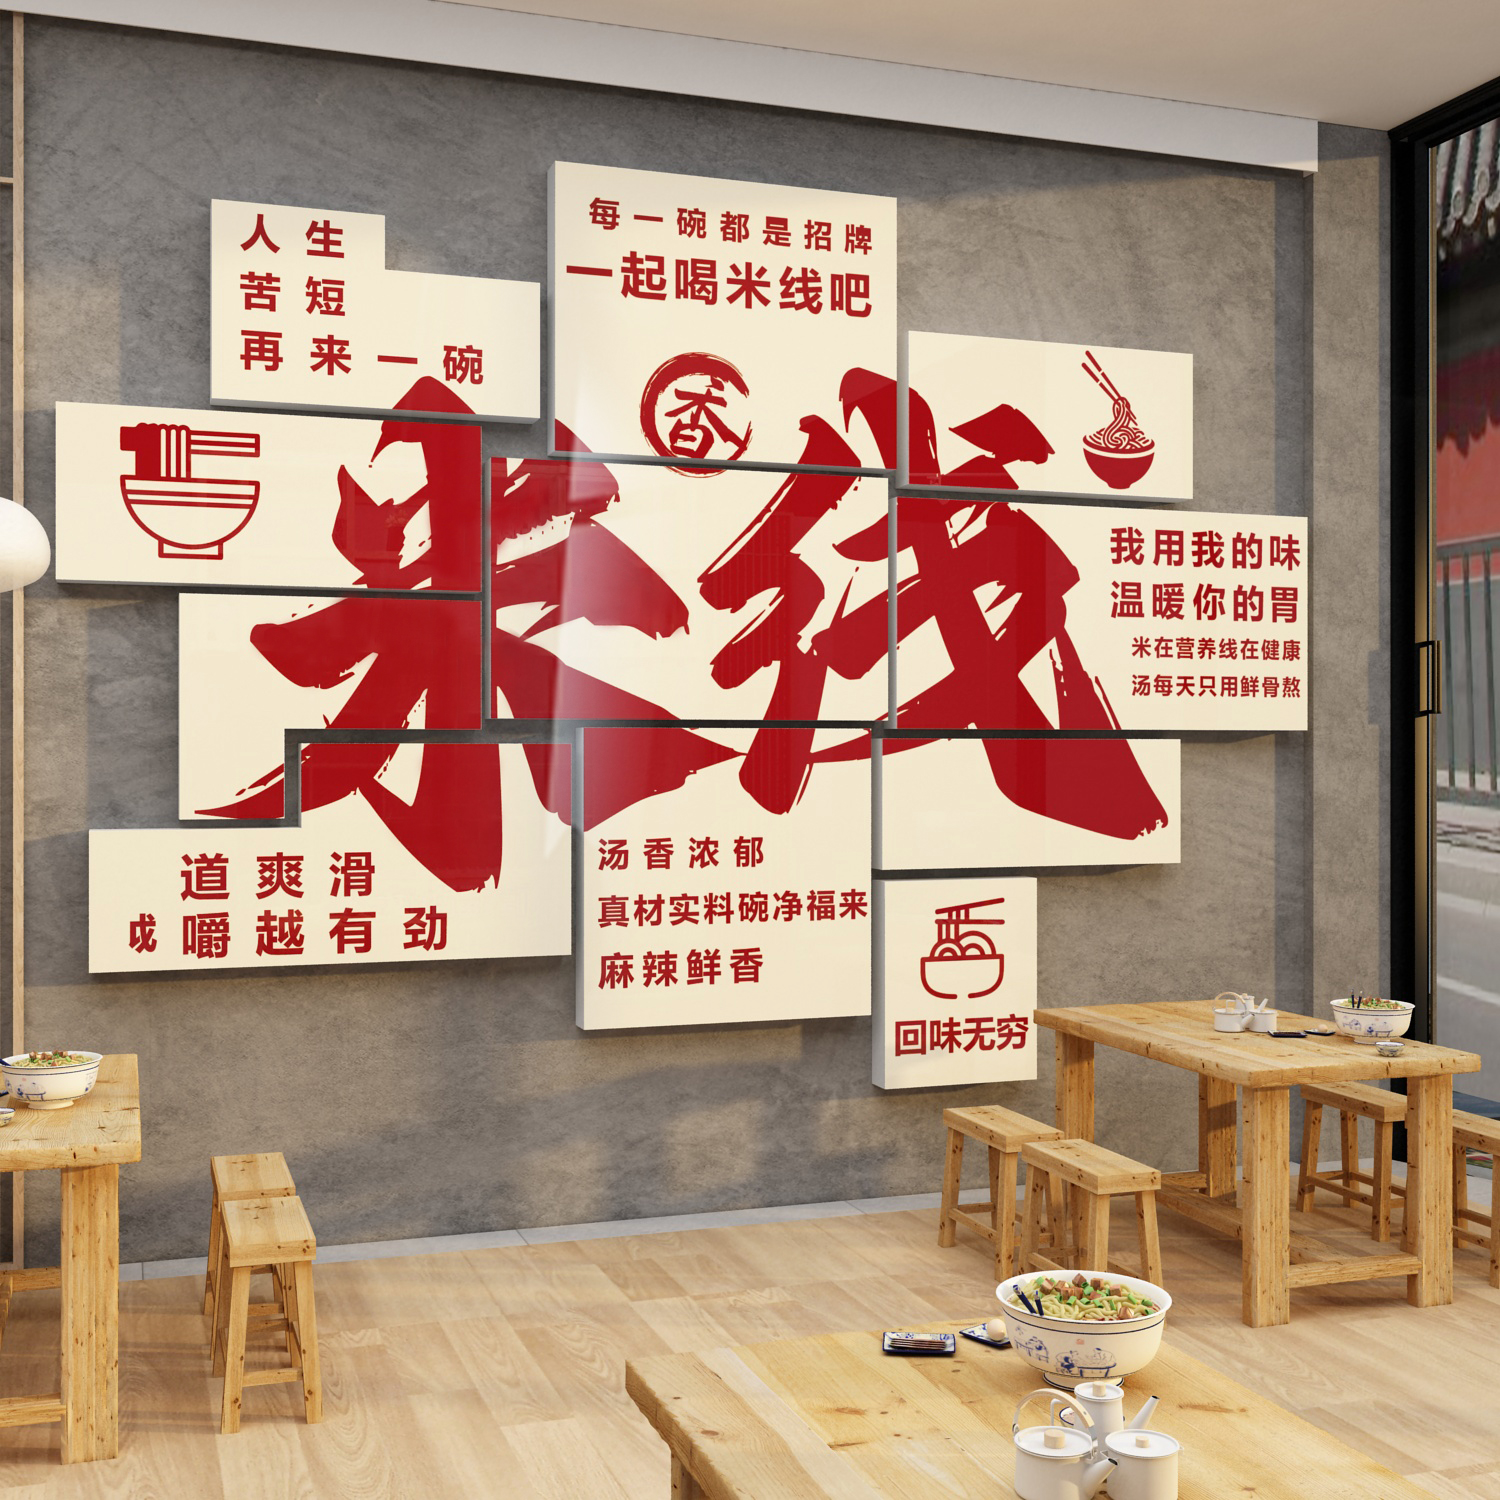 米线店铺墙面装饰网红工业风米粉餐饮小吃店创意壁画广告贴纸面馆